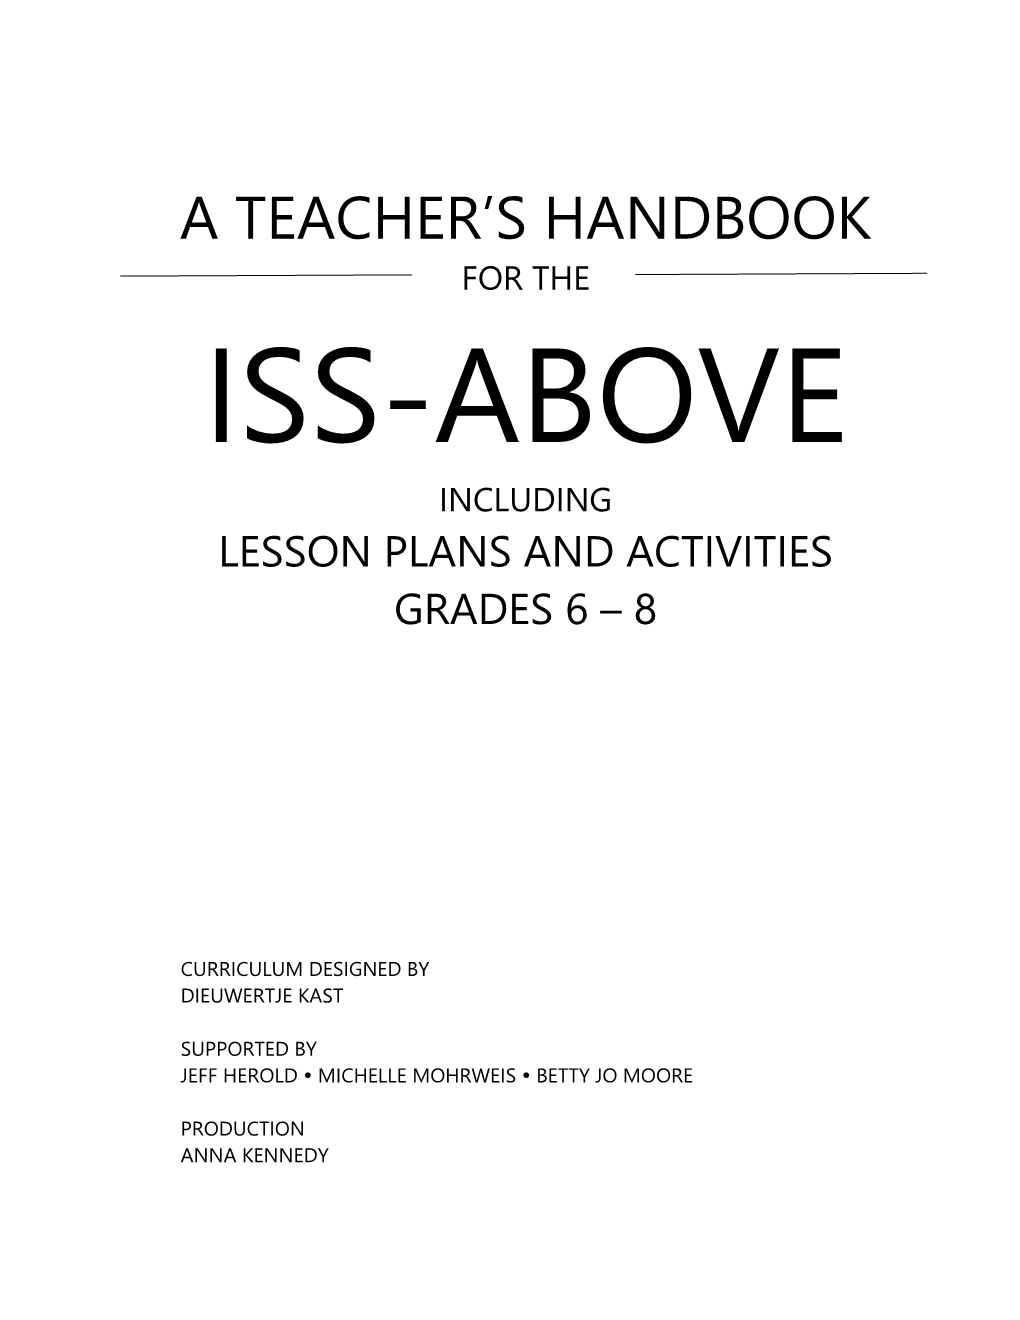 A Teacher's Handbook